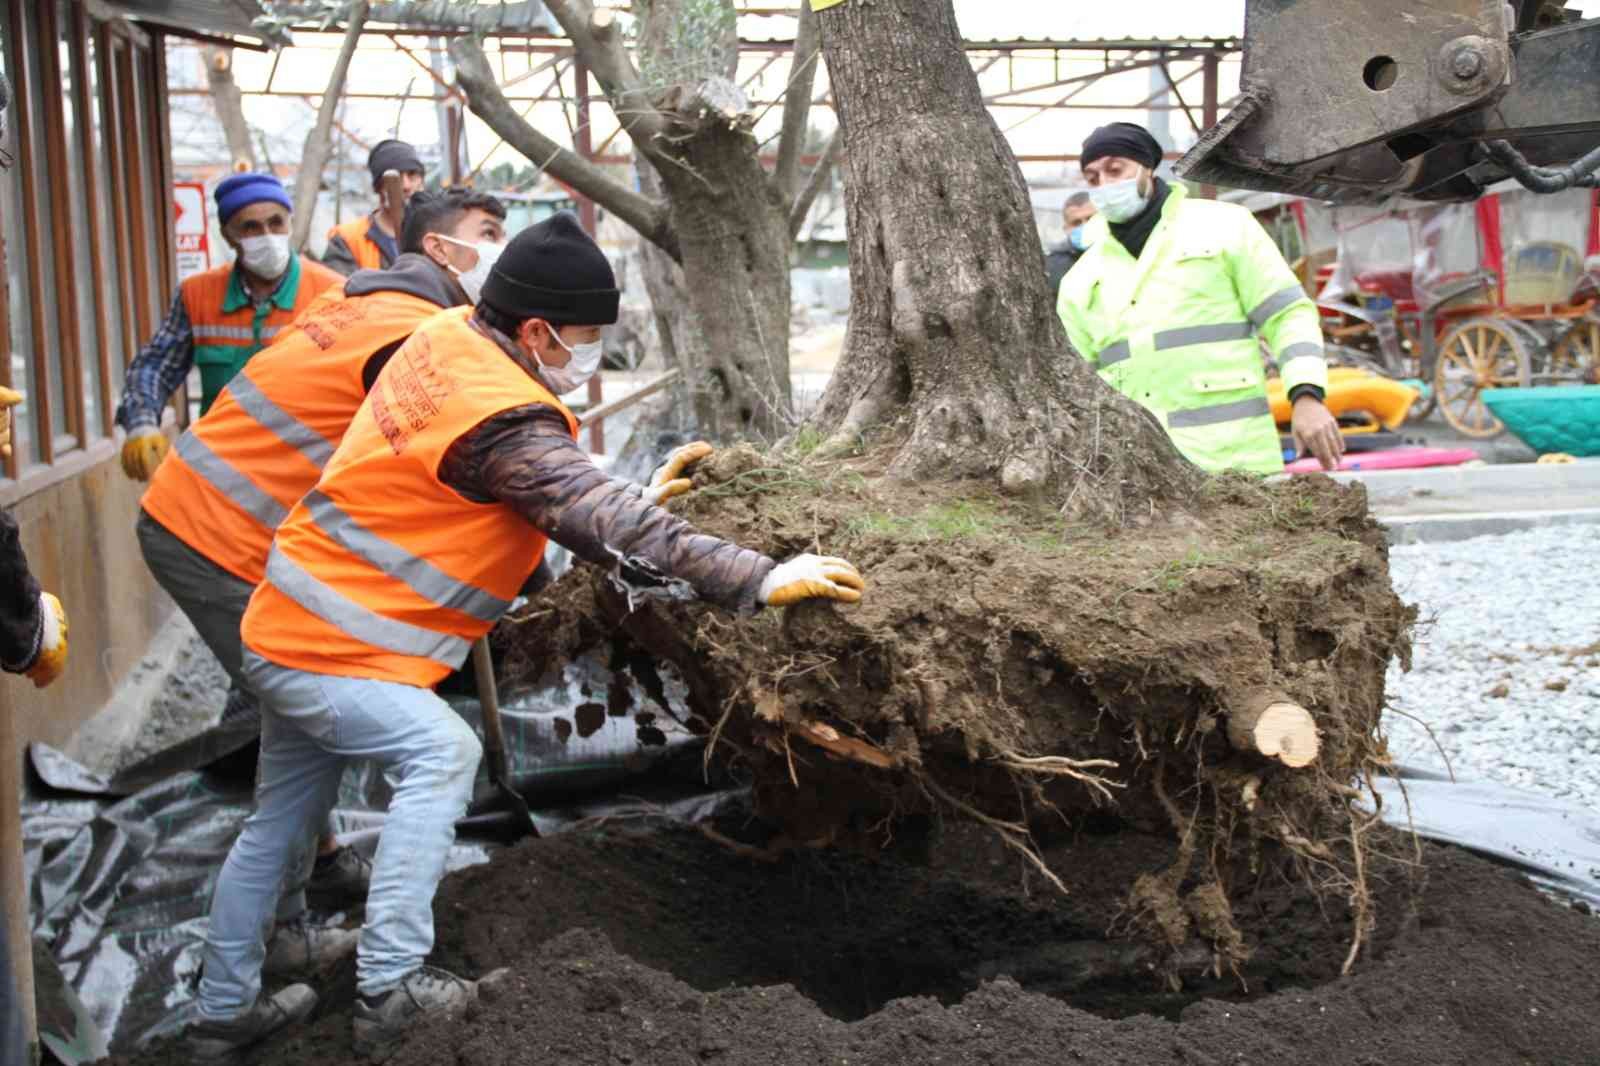 Esenyurt’ta asırlık zeytin ağaçlarını kesilmekten kurtarıldı #istanbul